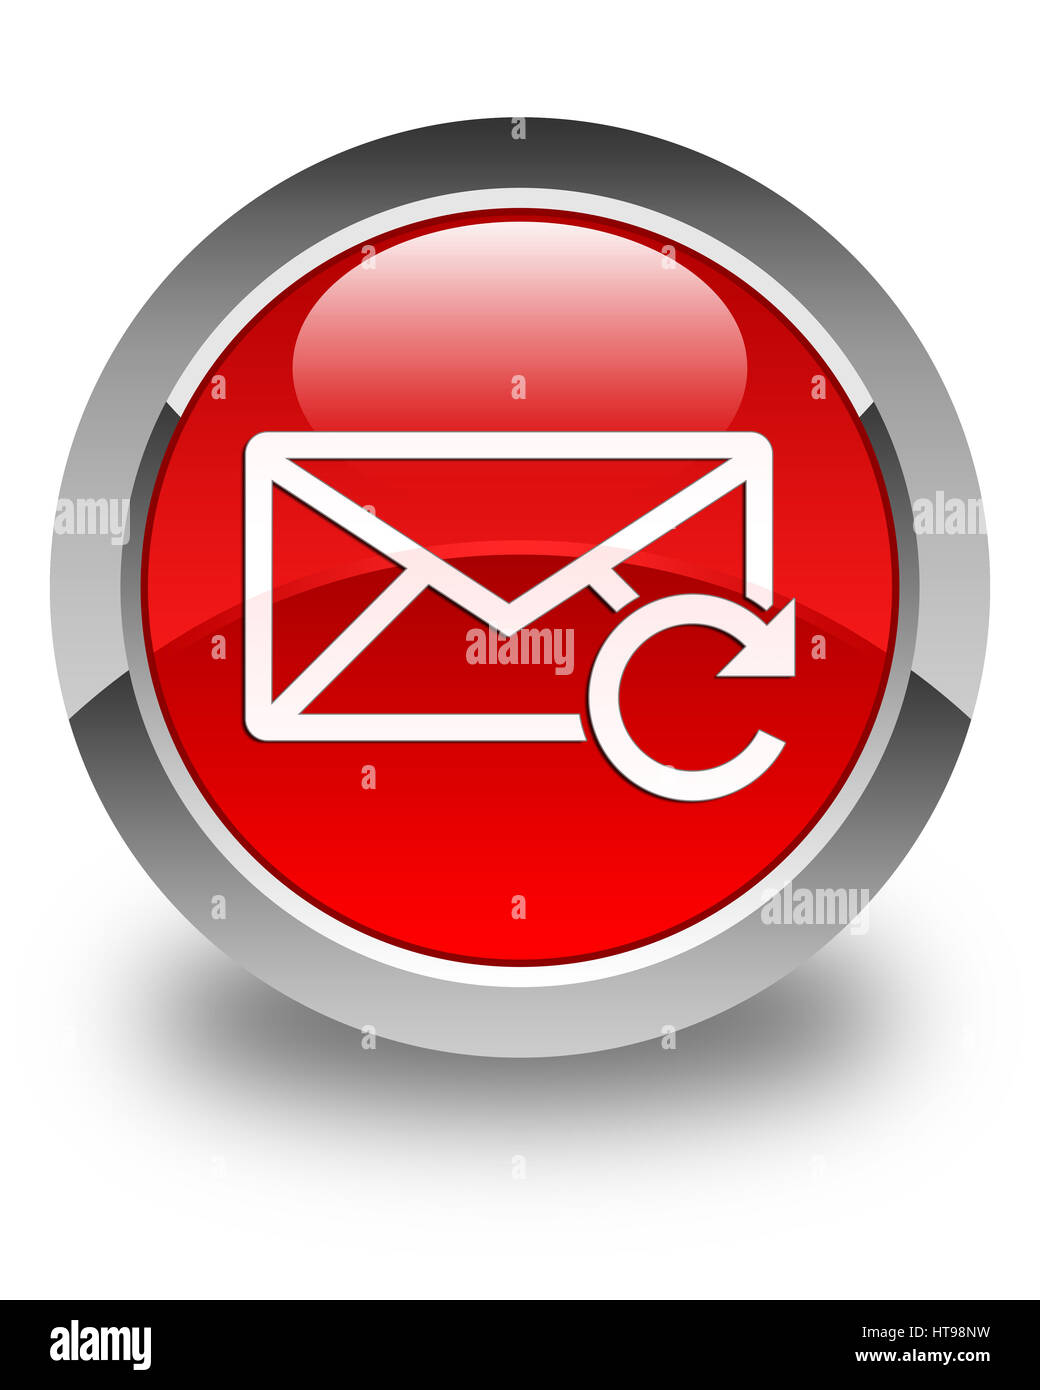 Actualiser icône e-mail isolé sur le bouton rond rouge brillant abstract illustration Banque D'Images